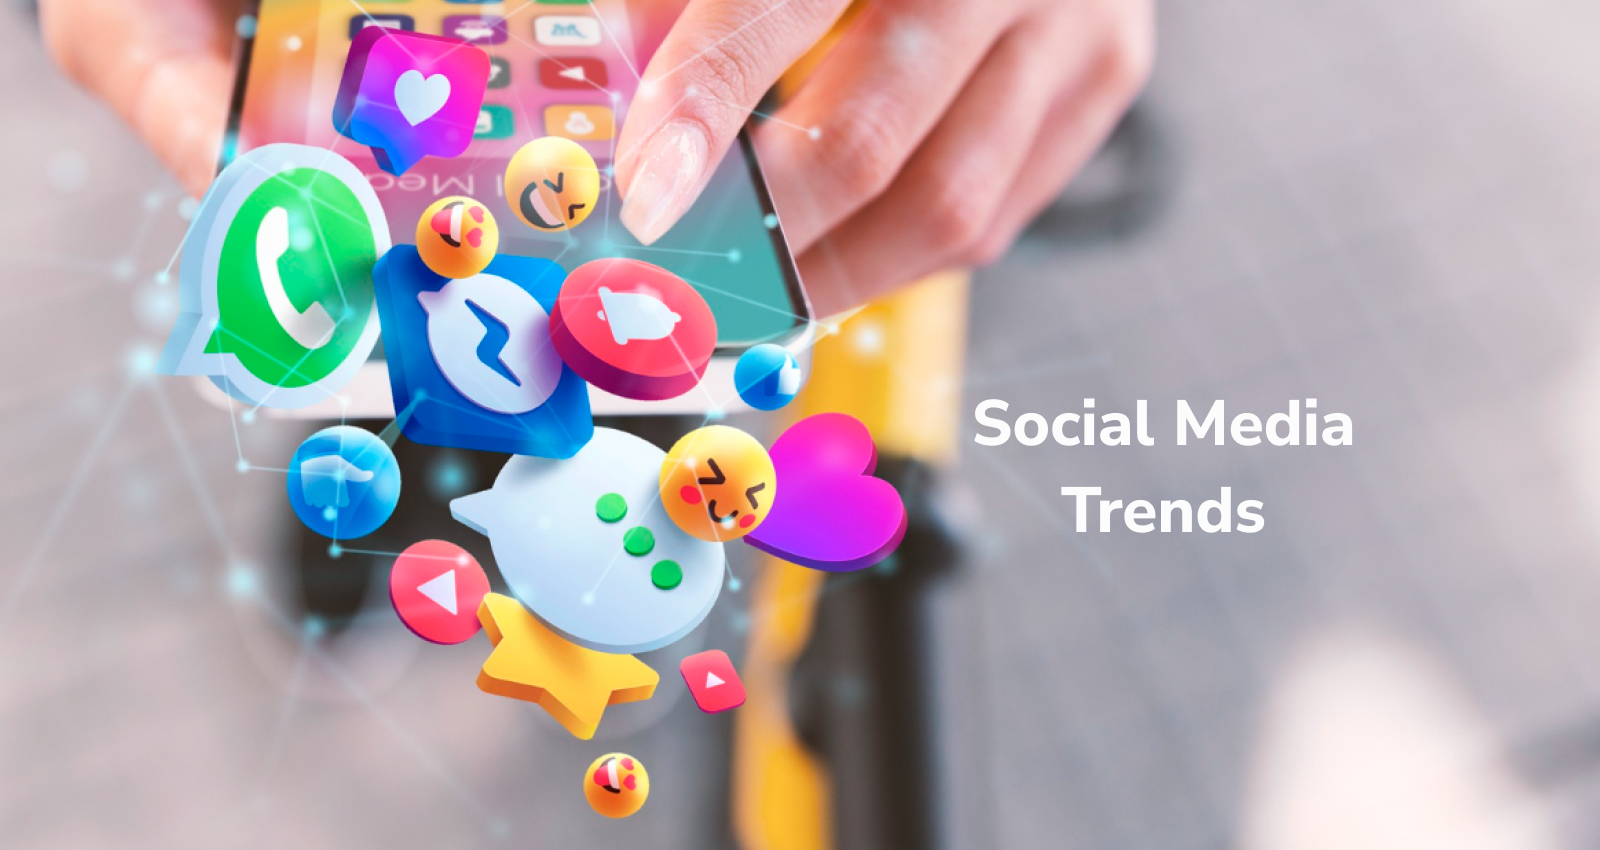 Social Media Trends, Mobile App Development, App Develop, Facebook, Instagram, LinkedIn, Twitter, YouTube, AI, IoT, 5G, AR & VR, ML.